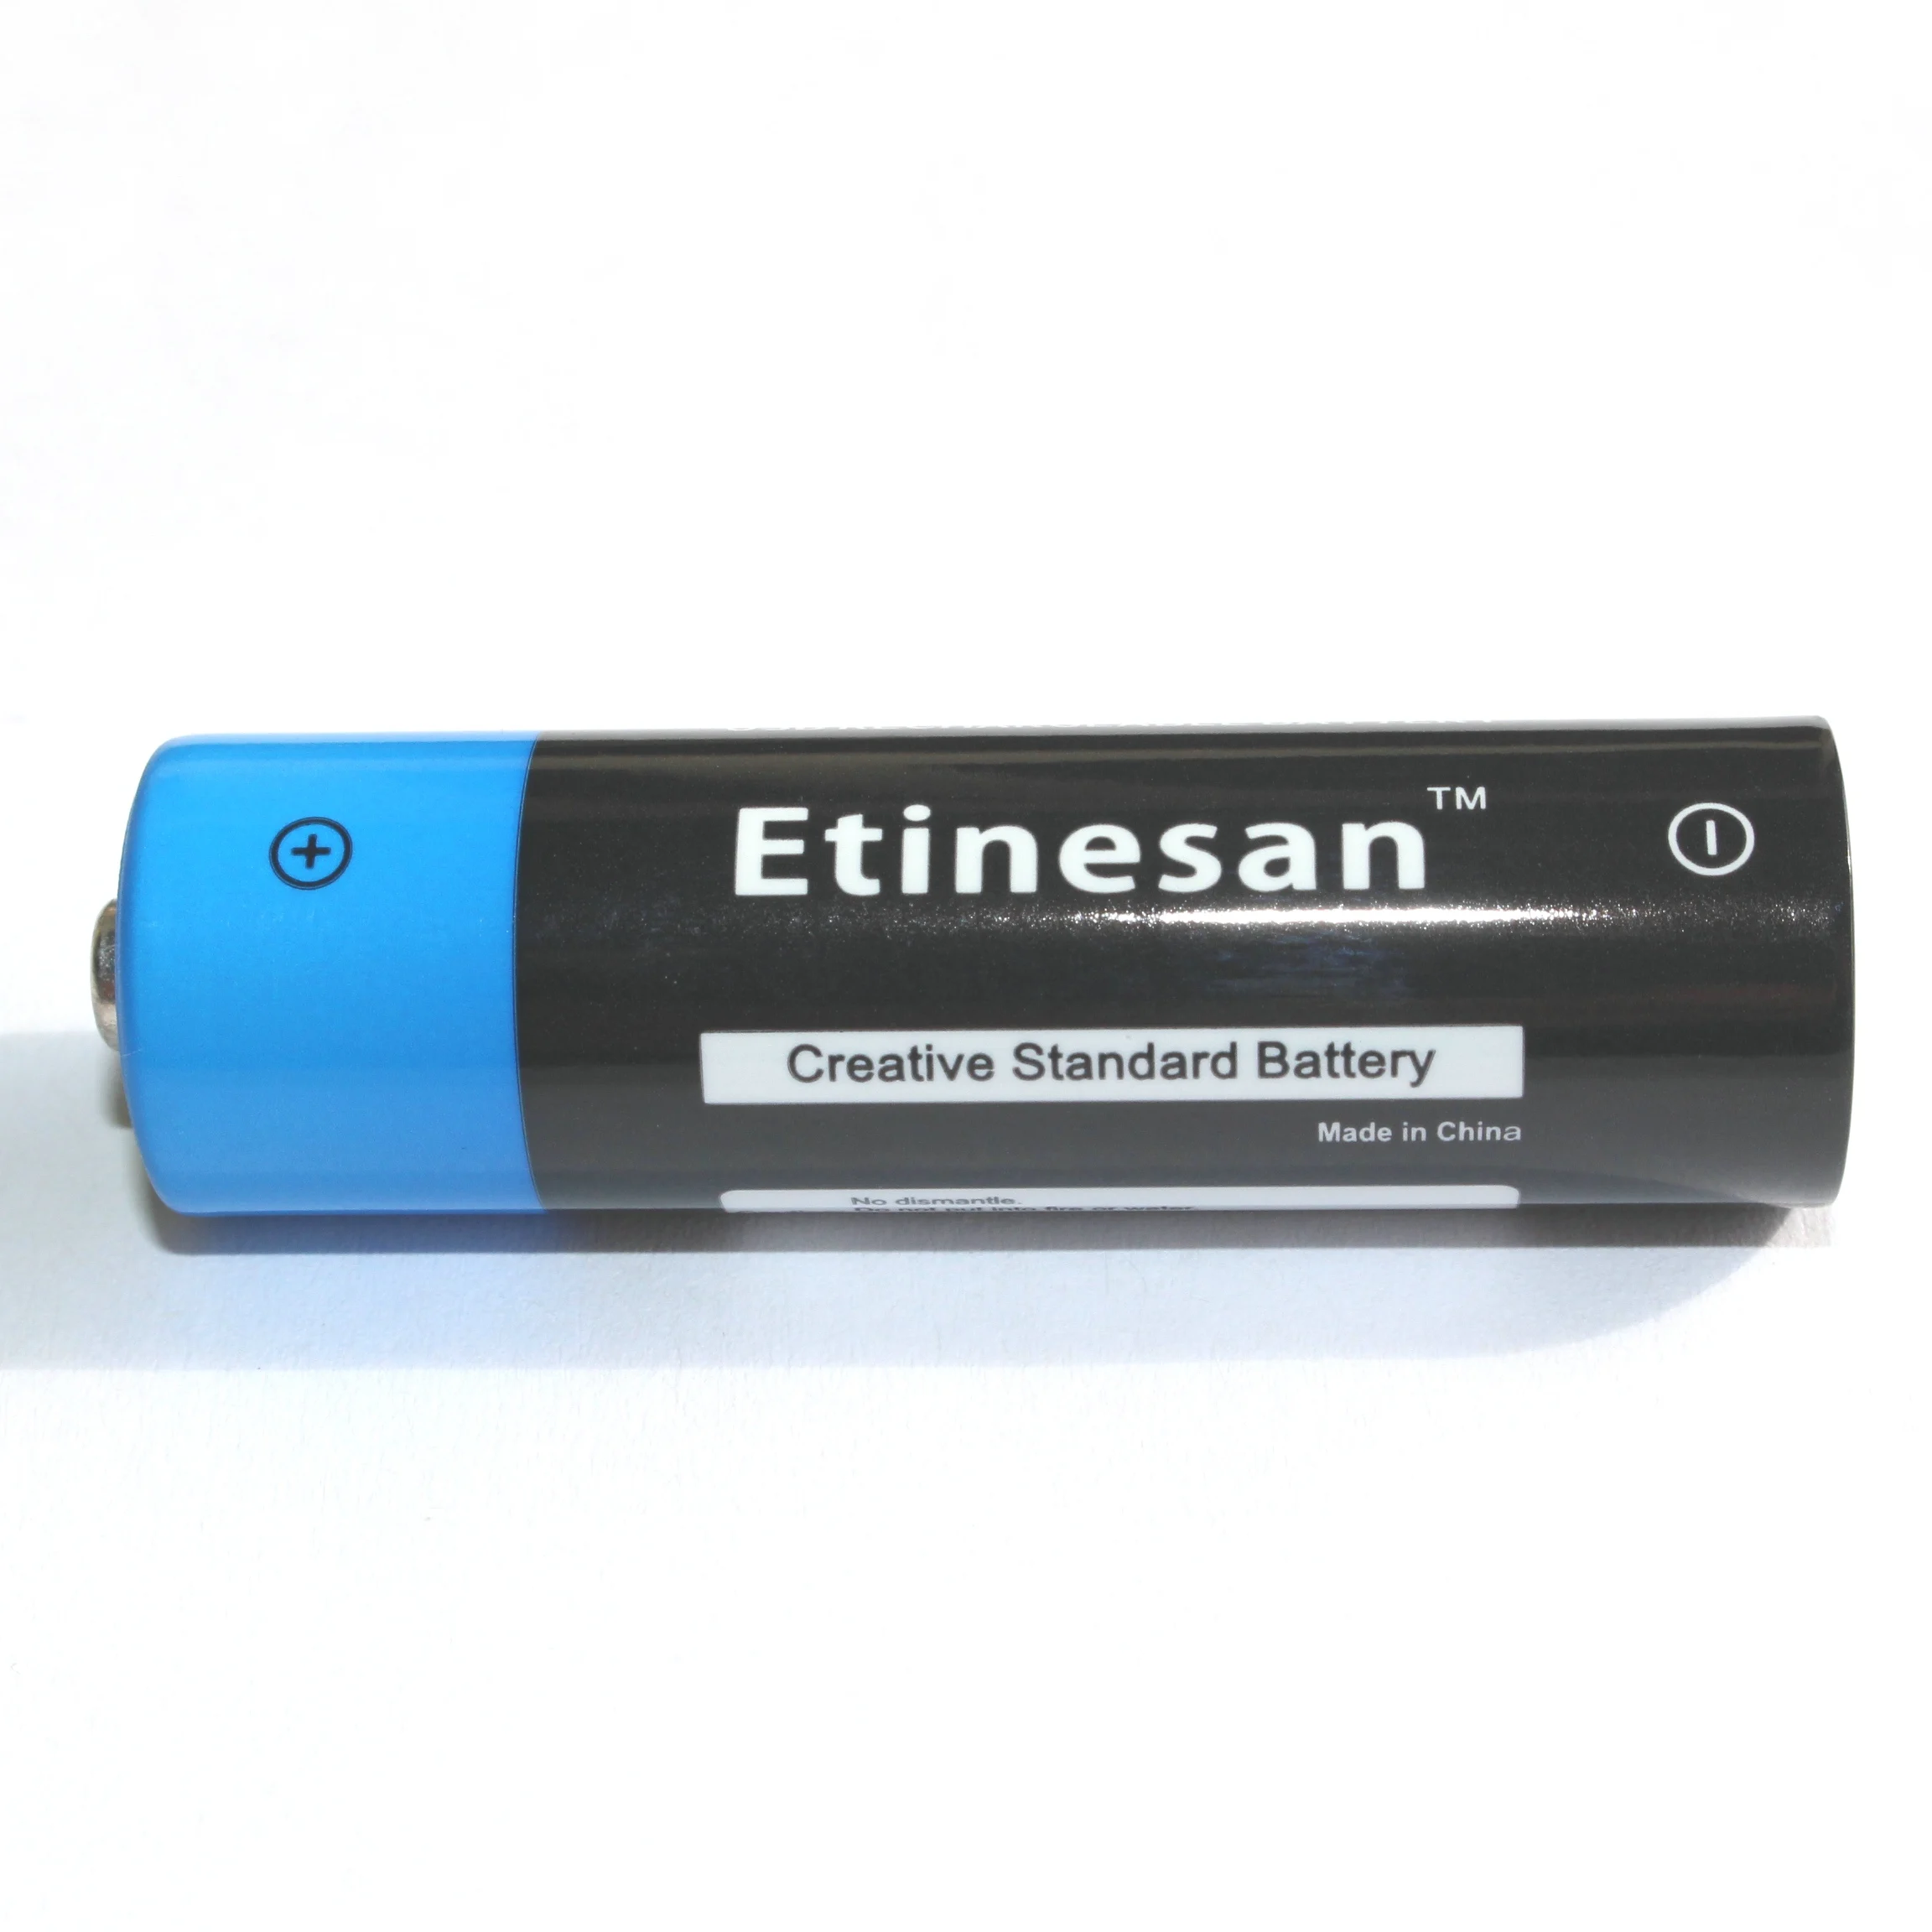 Etinesan 1,5 V 2700mWh AA Li-polymer genopladelige lithium li-ion batterier, hurtig opladning til Mikrofon,Kamera,spil,legetøj ect.